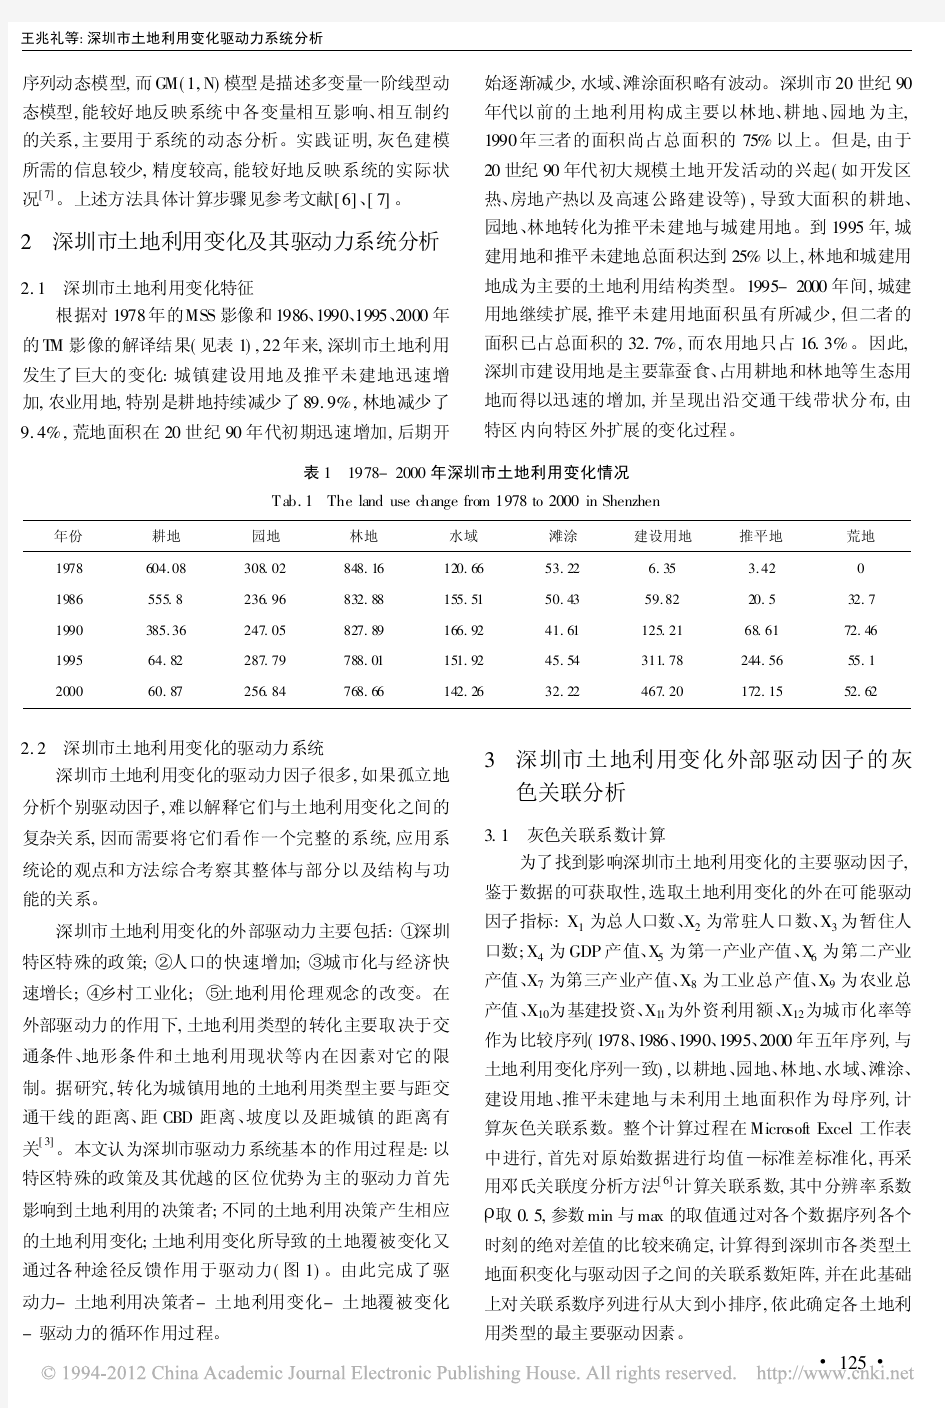 深圳市土地利用变化驱动力系统分析